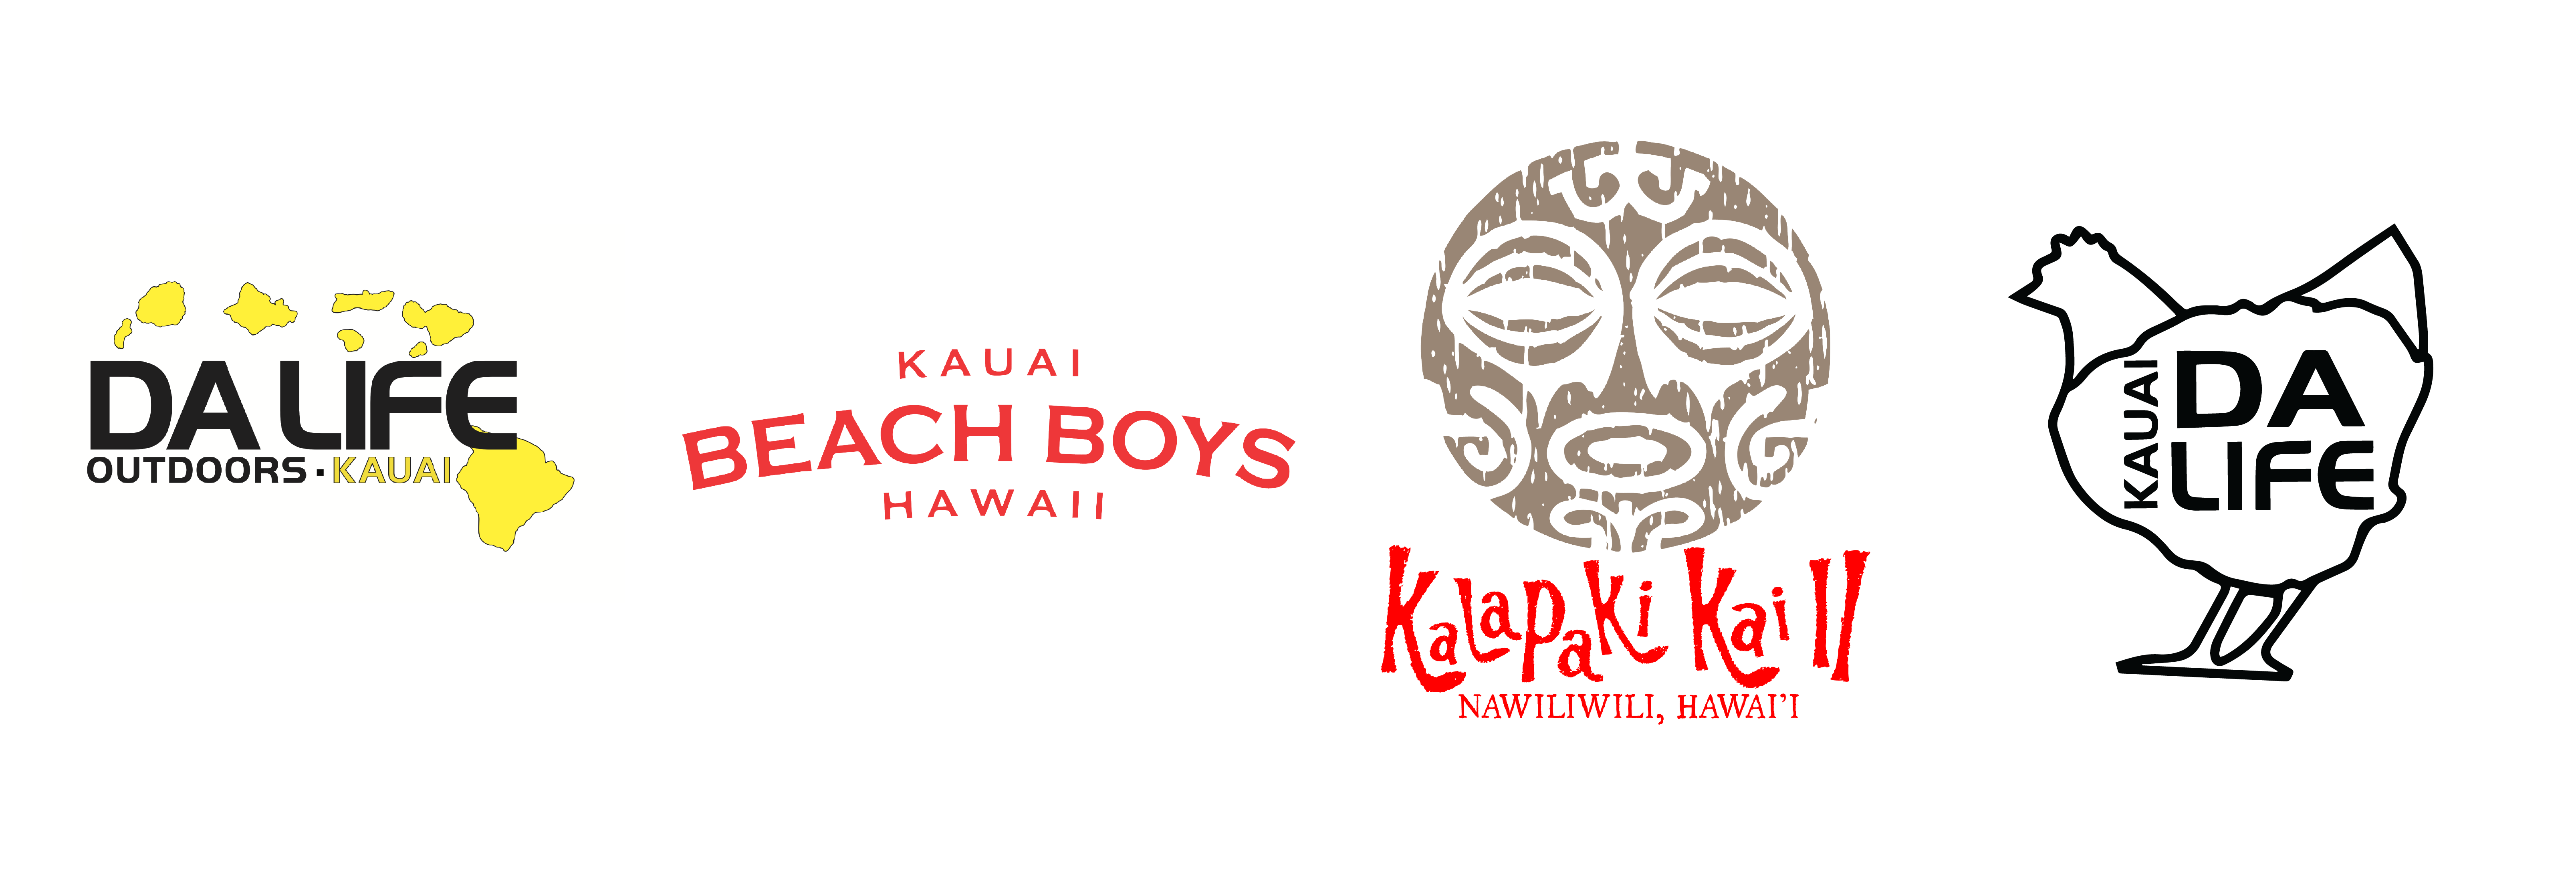 Da Life Outdoors - Kauai Beach Boys